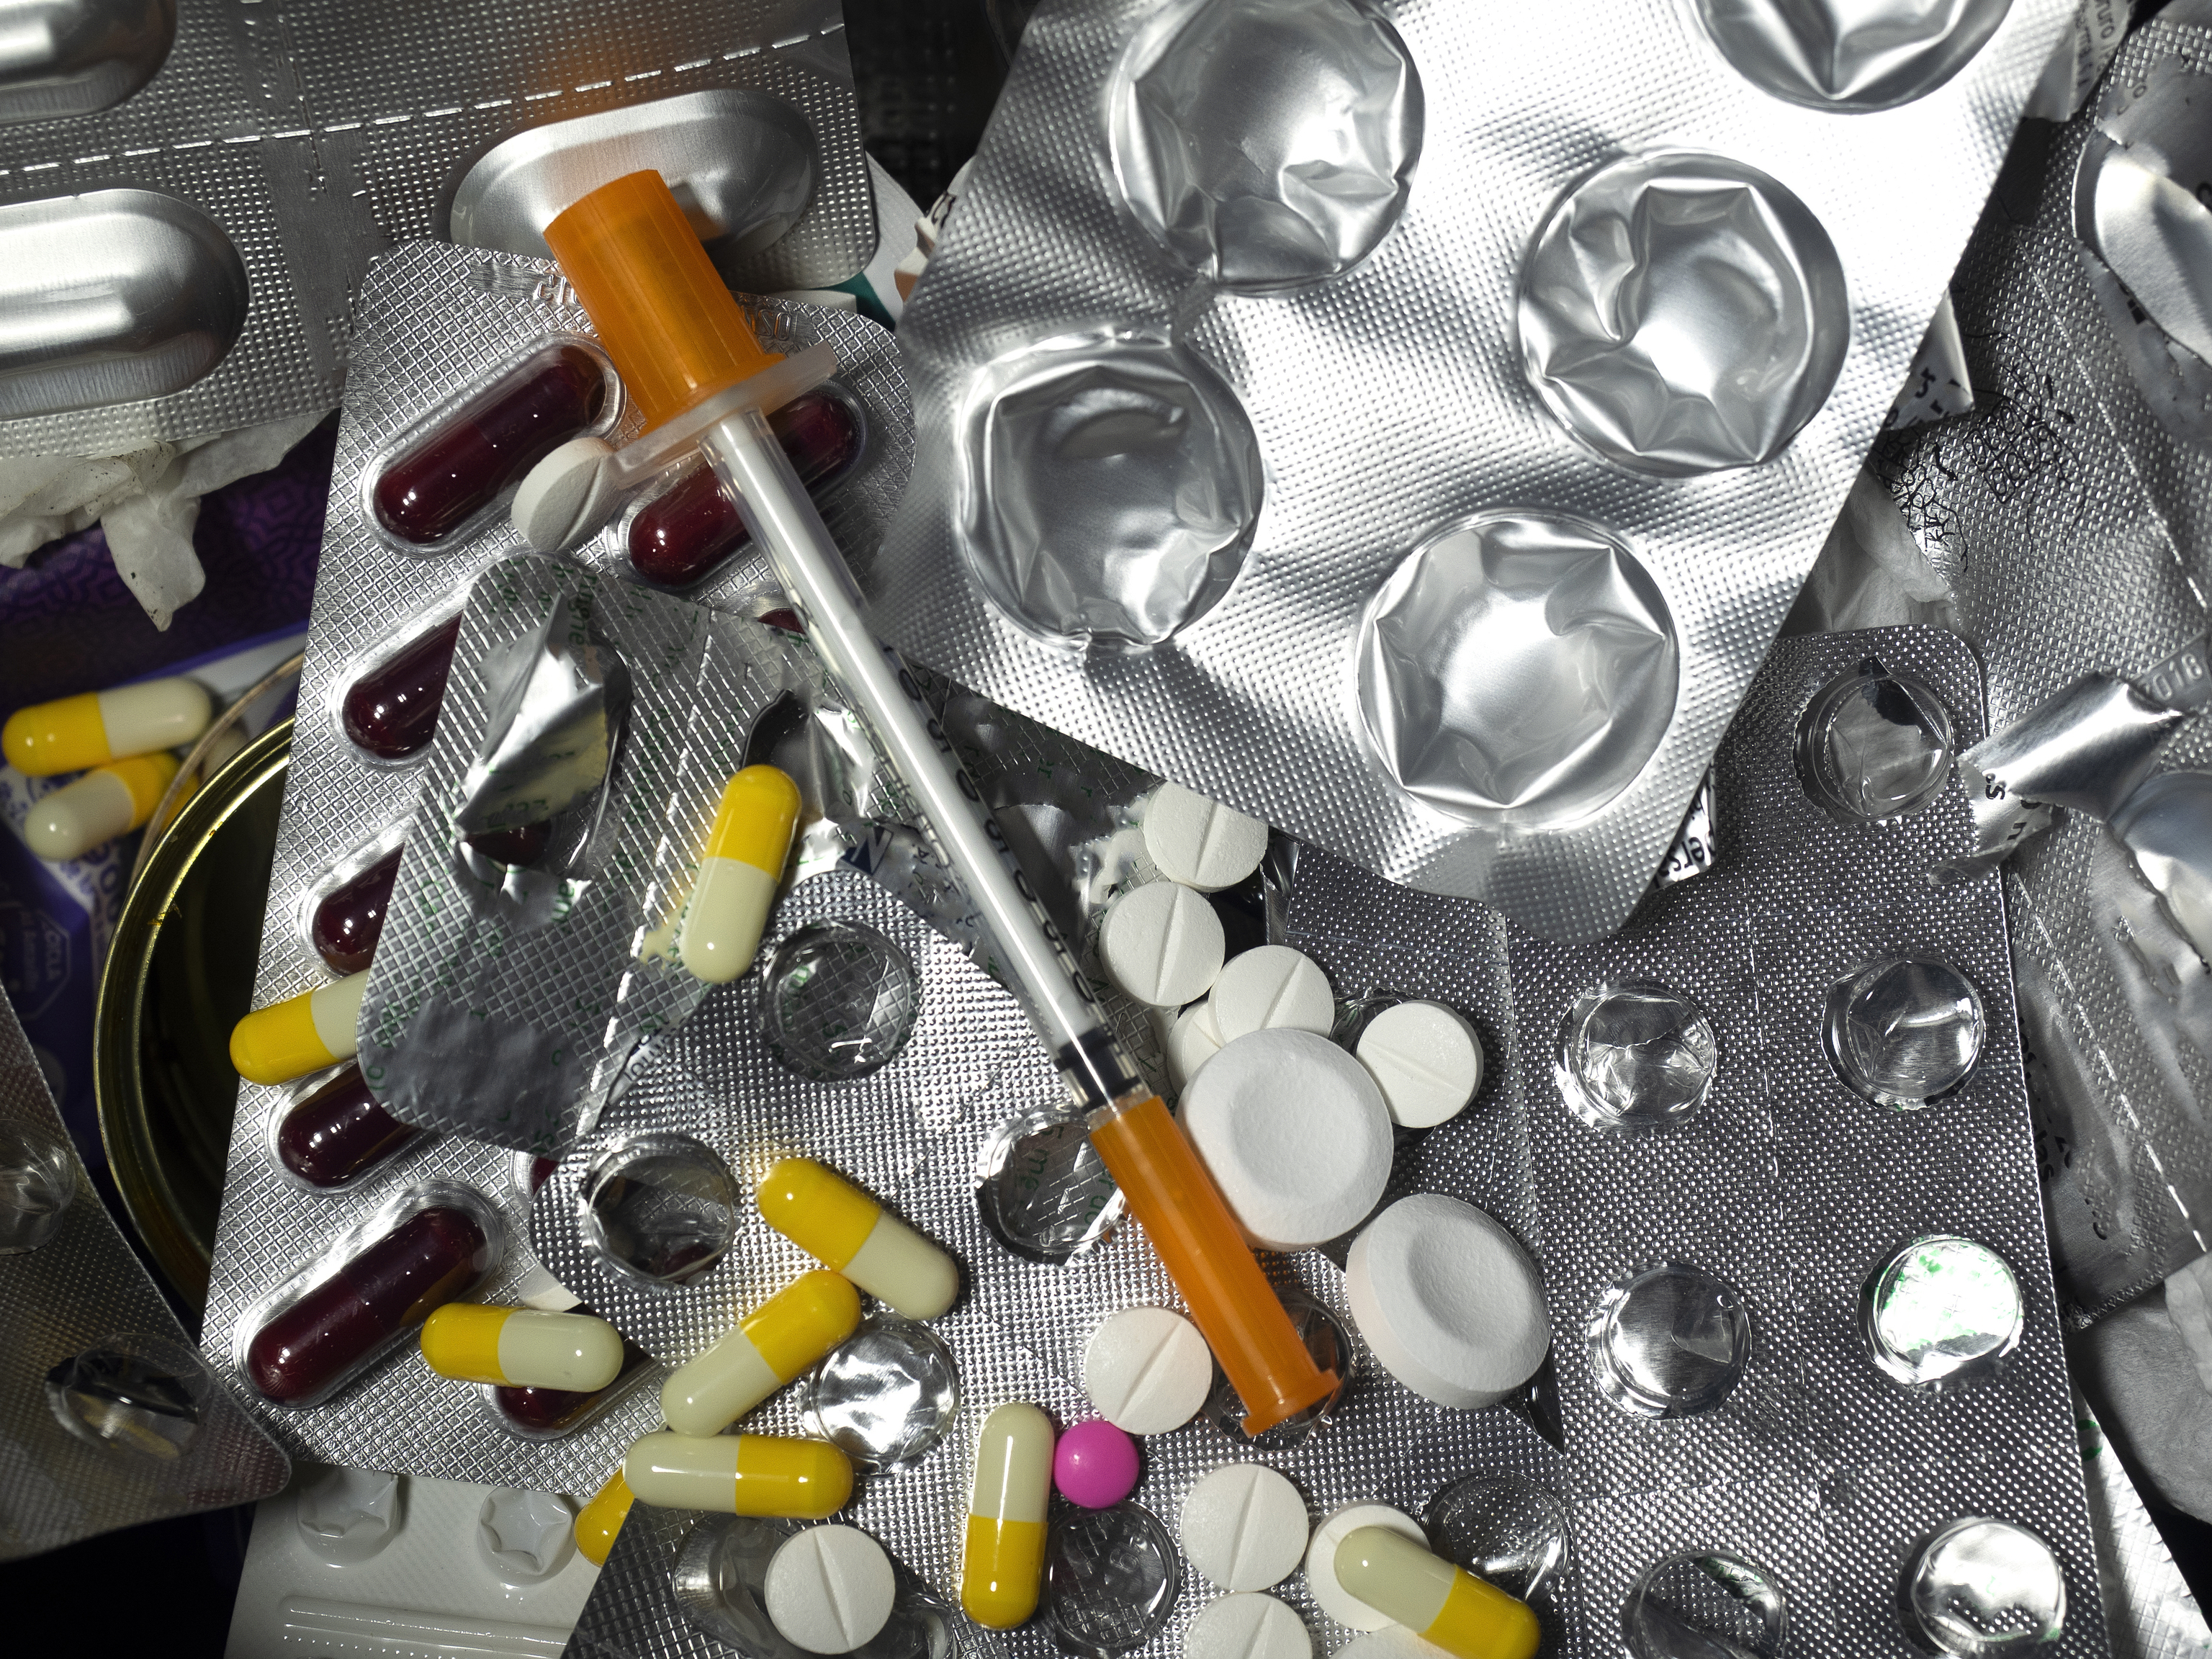 Los antibióticos han sido uno de los grupos de productos farmacéuticos más monitorizados en las aguas residuales hospitalarias.